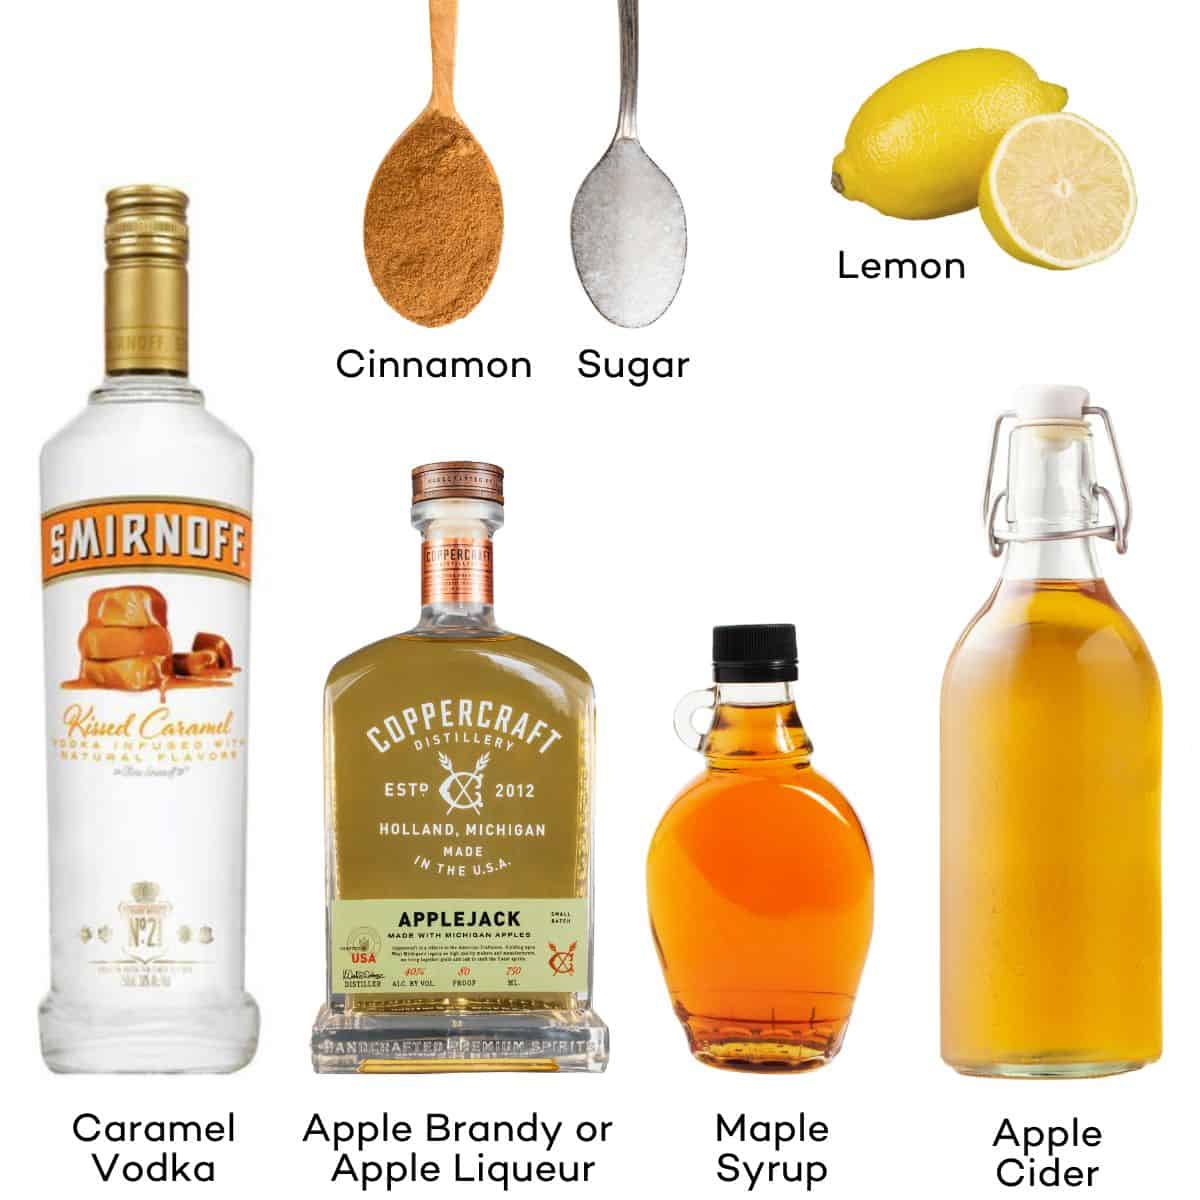 Ingredients for Caramel Apple Cocktails - caramel vodka, apple brandy or apple liqueur, maple syrup, apple cider, lemon, cinnamon, sugar.